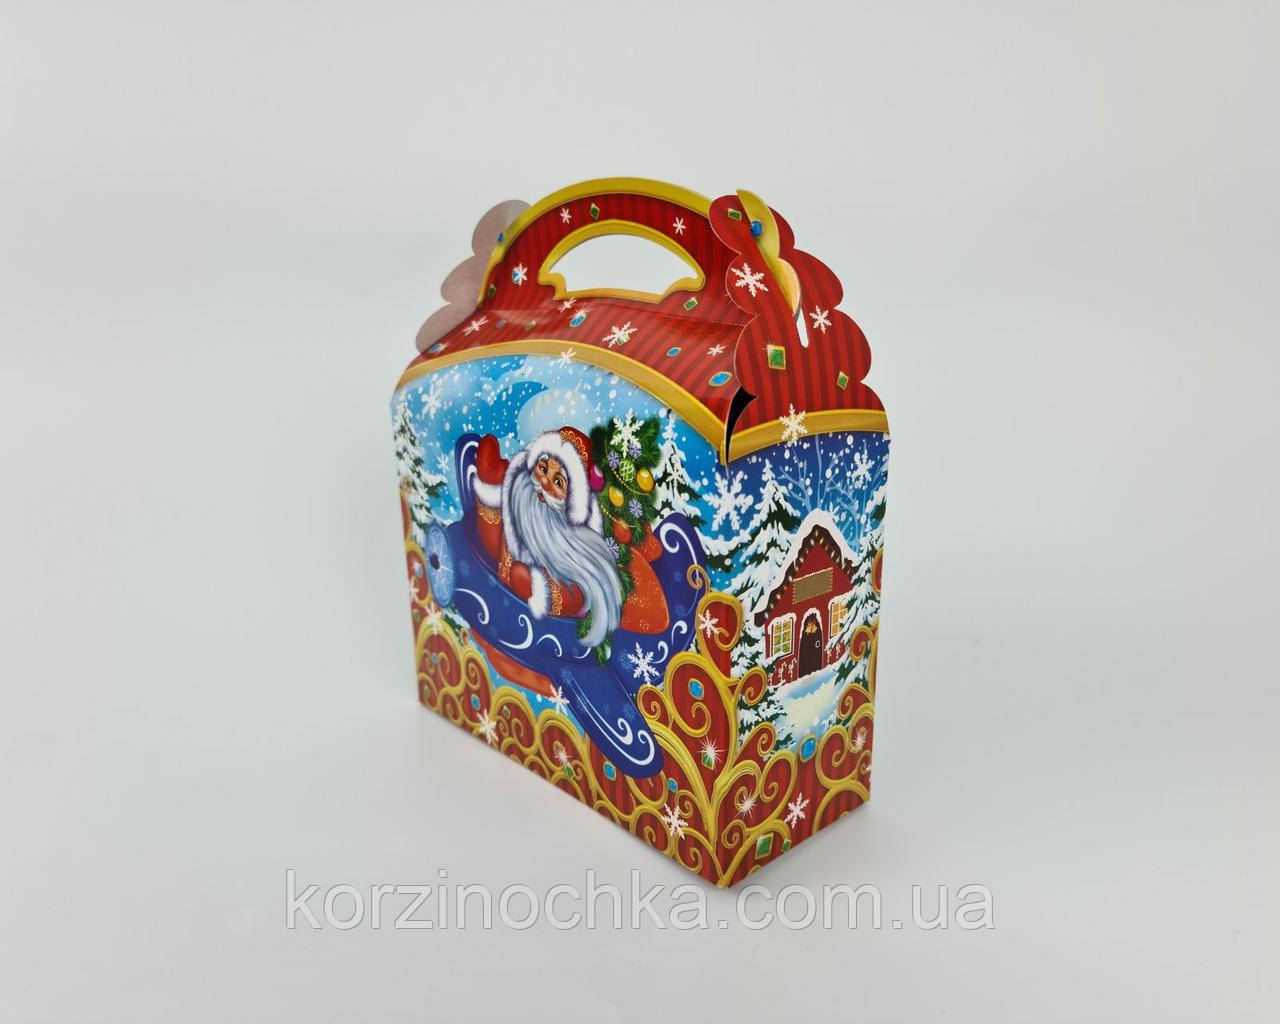 Новорічна Коробка для Цукерок(800-1000 гр)Дід Мороз на літаку( шт)Новорічна упаковка для цукерок та подарунків